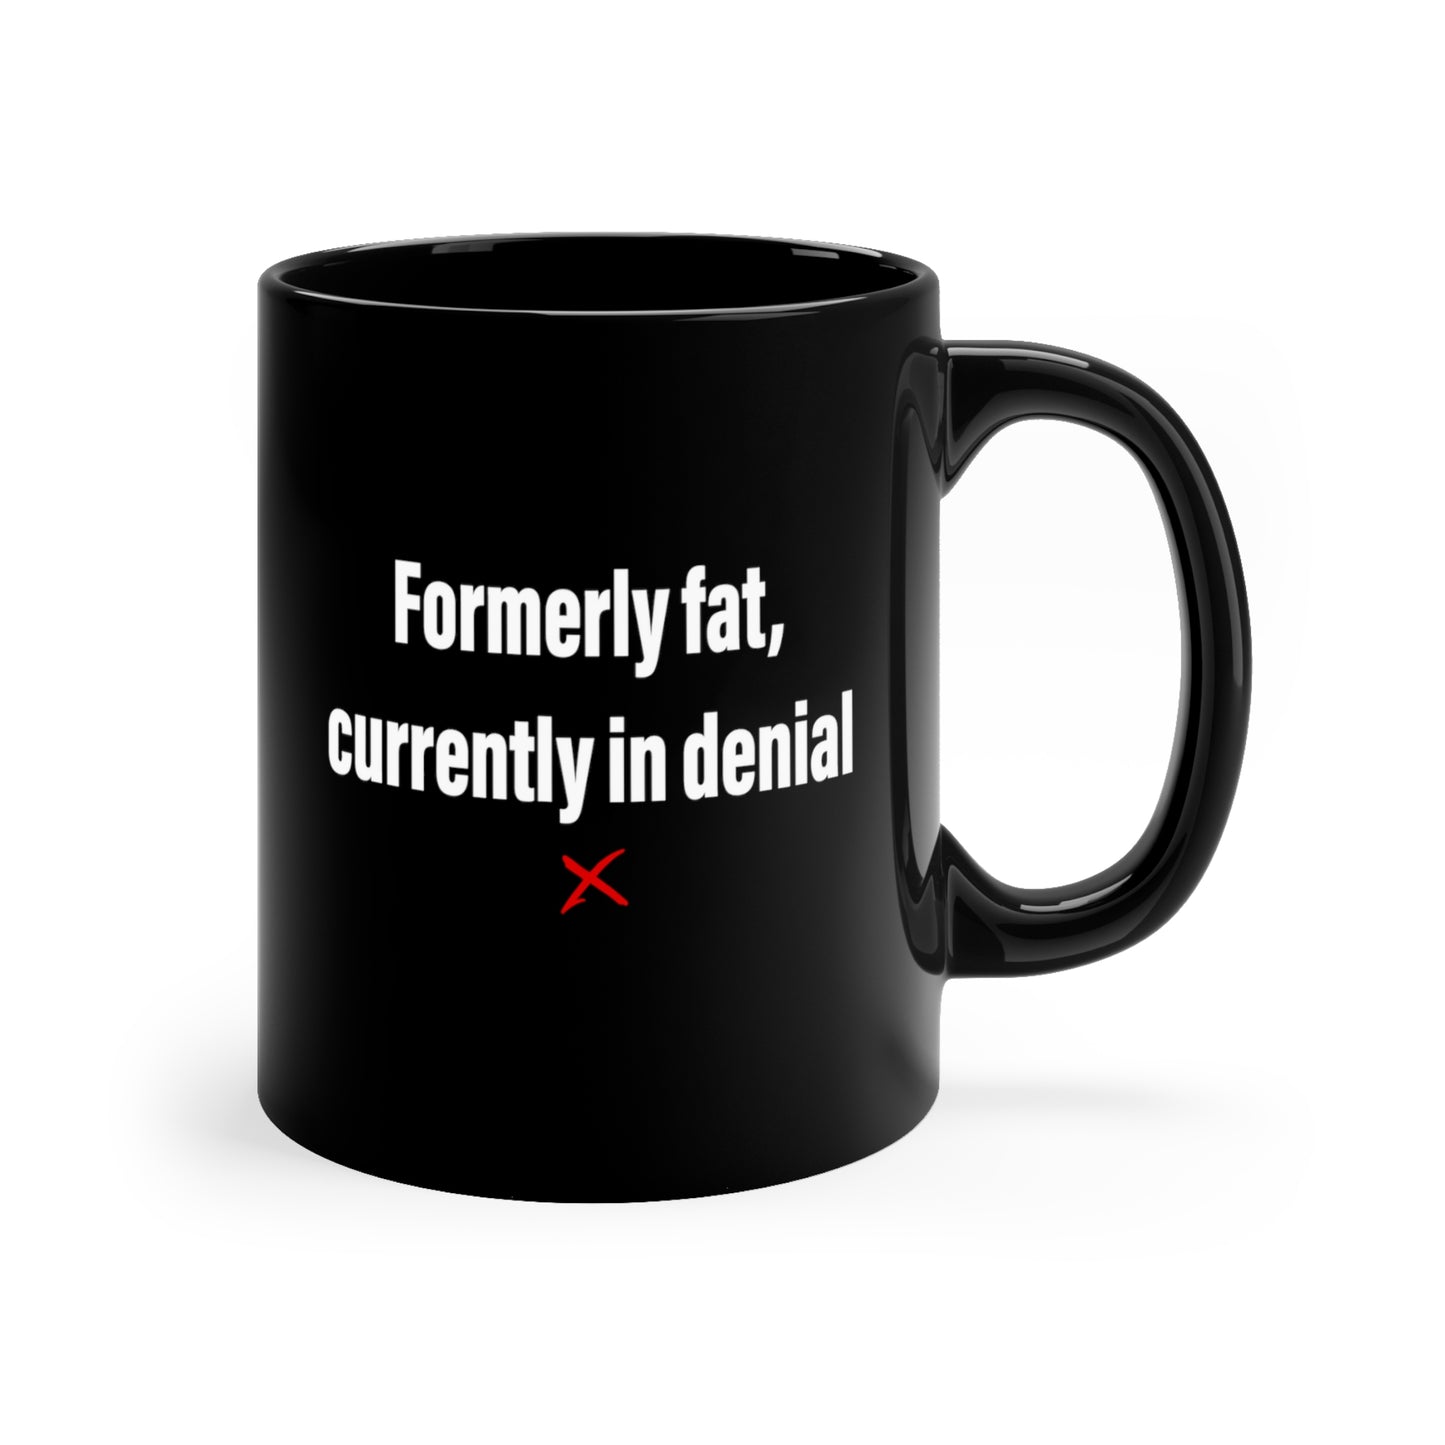 Formerly fat, currently in denial - Mug